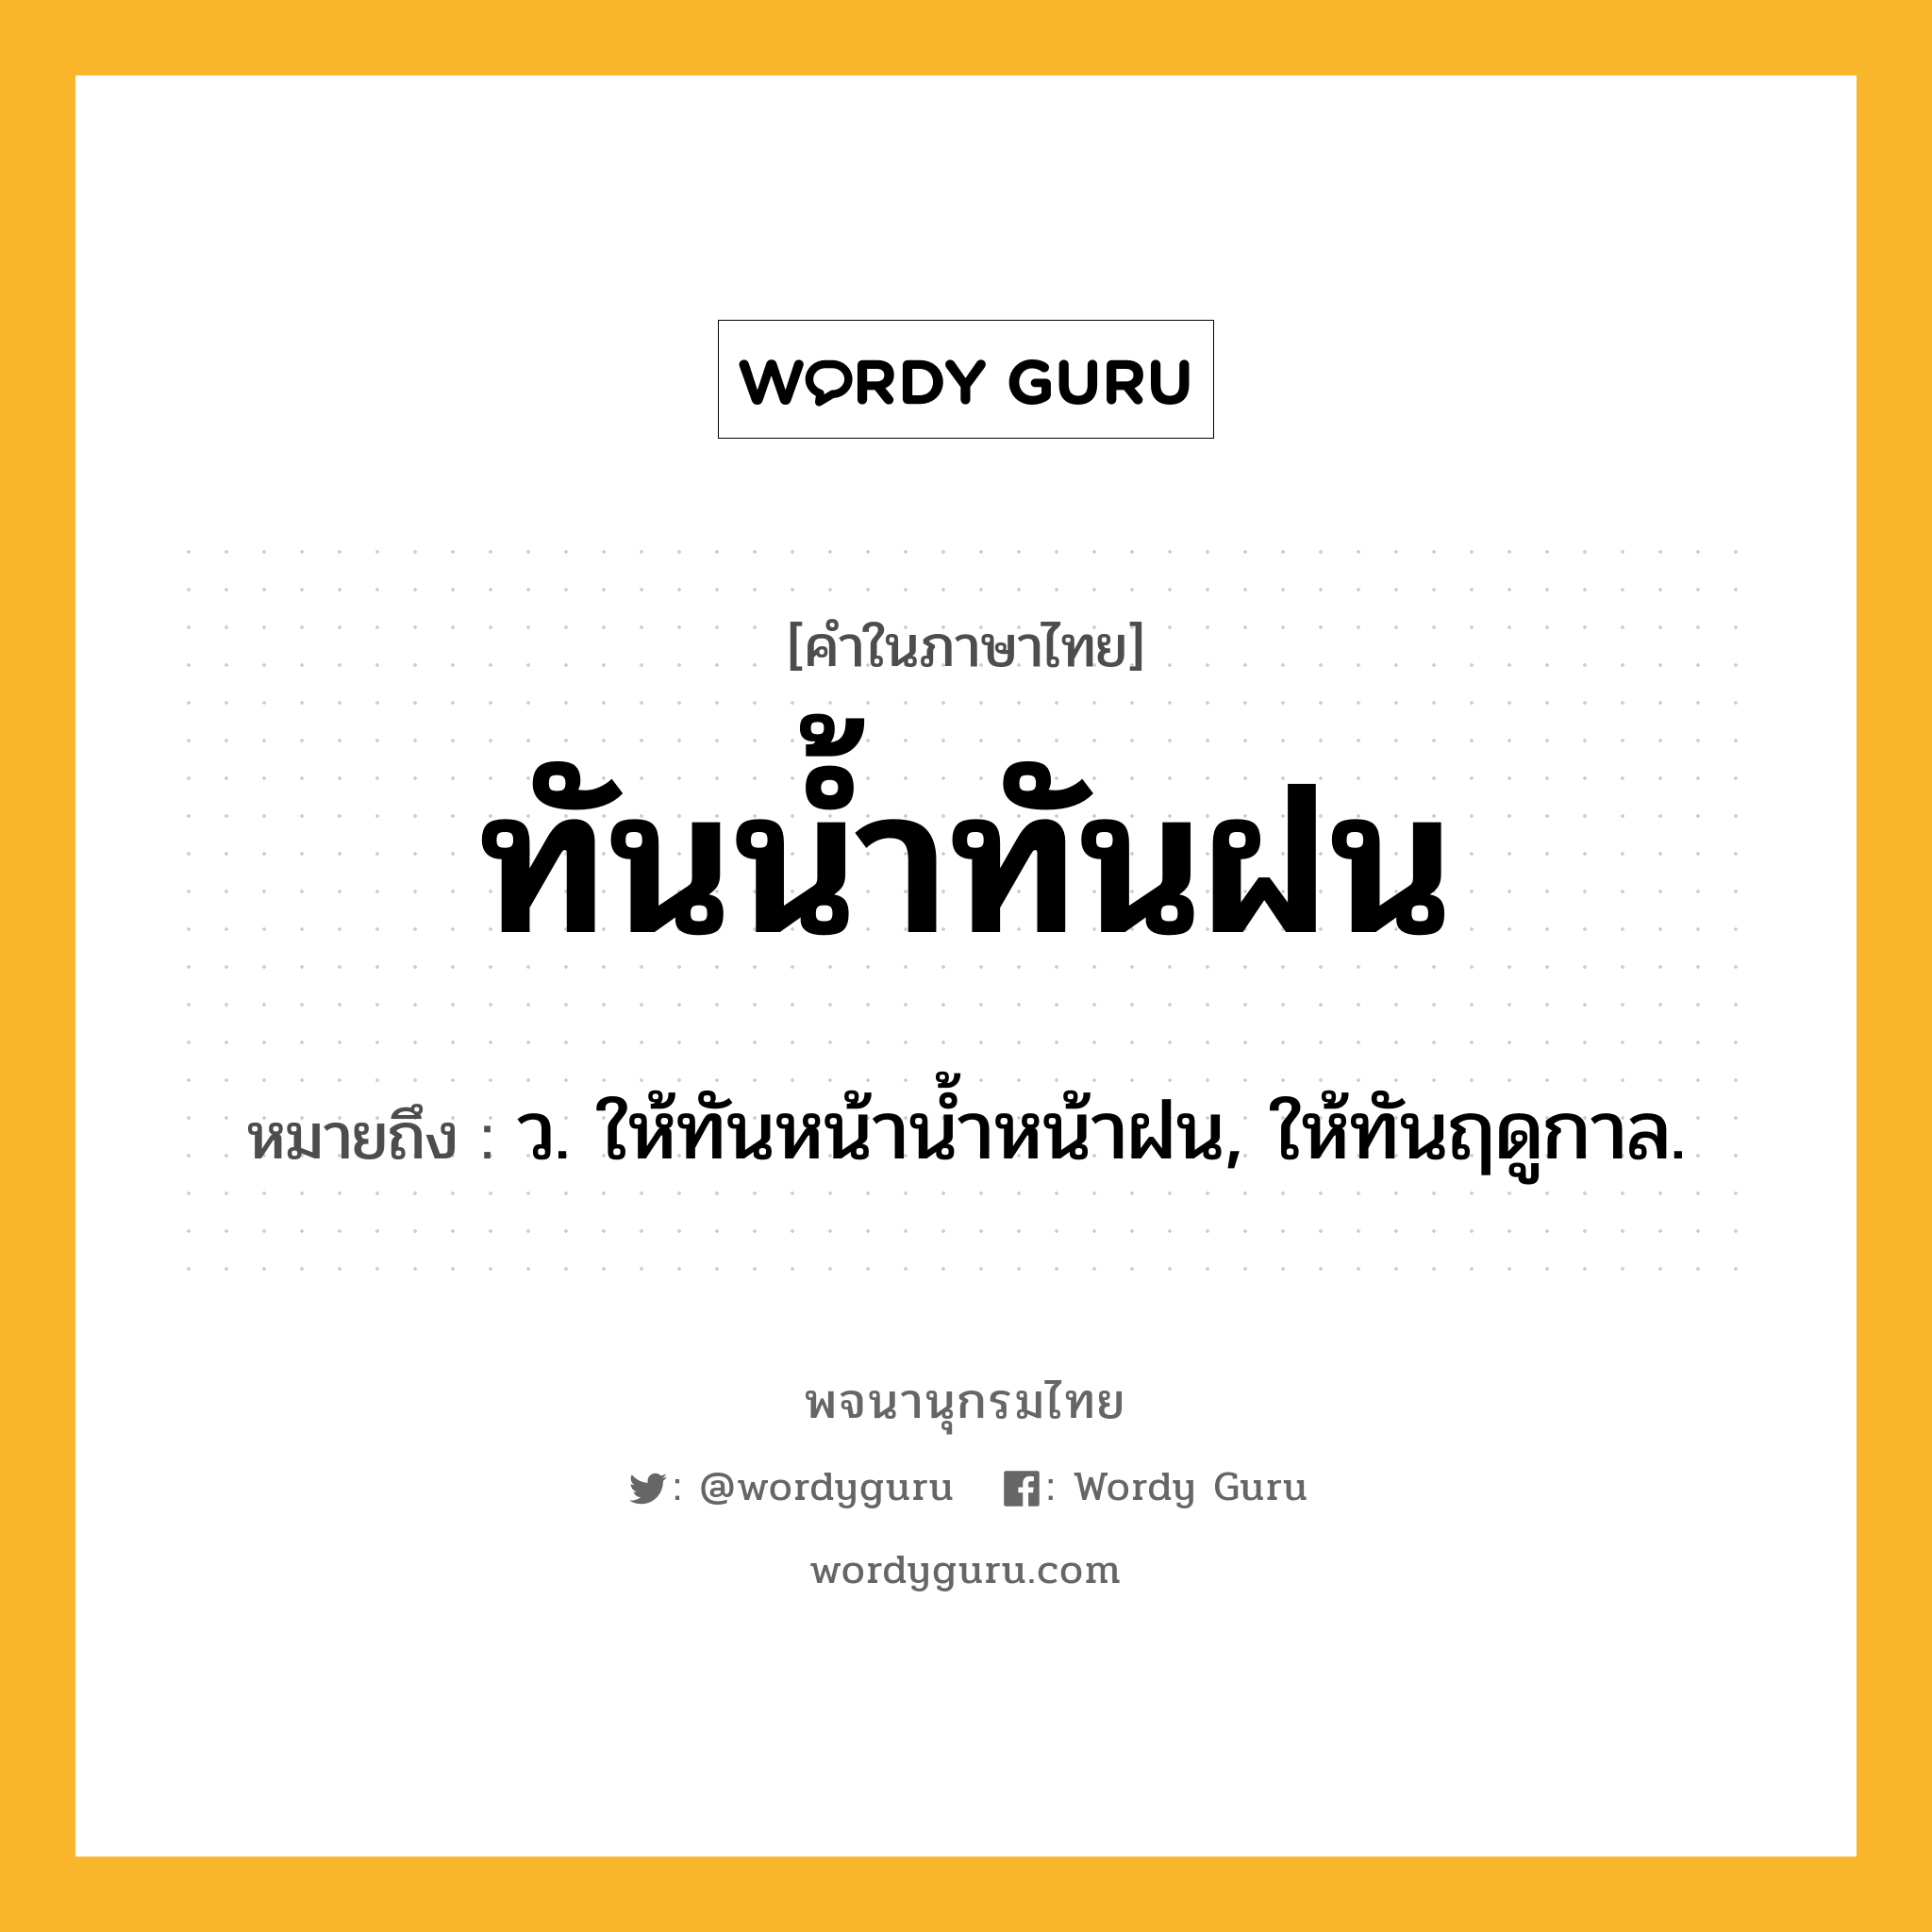 ทันน้ำทันฝน ความหมาย หมายถึงอะไร?, คำในภาษาไทย ทันน้ำทันฝน หมายถึง ว. ให้ทันหน้านํ้าหน้าฝน, ให้ทันฤดูกาล.